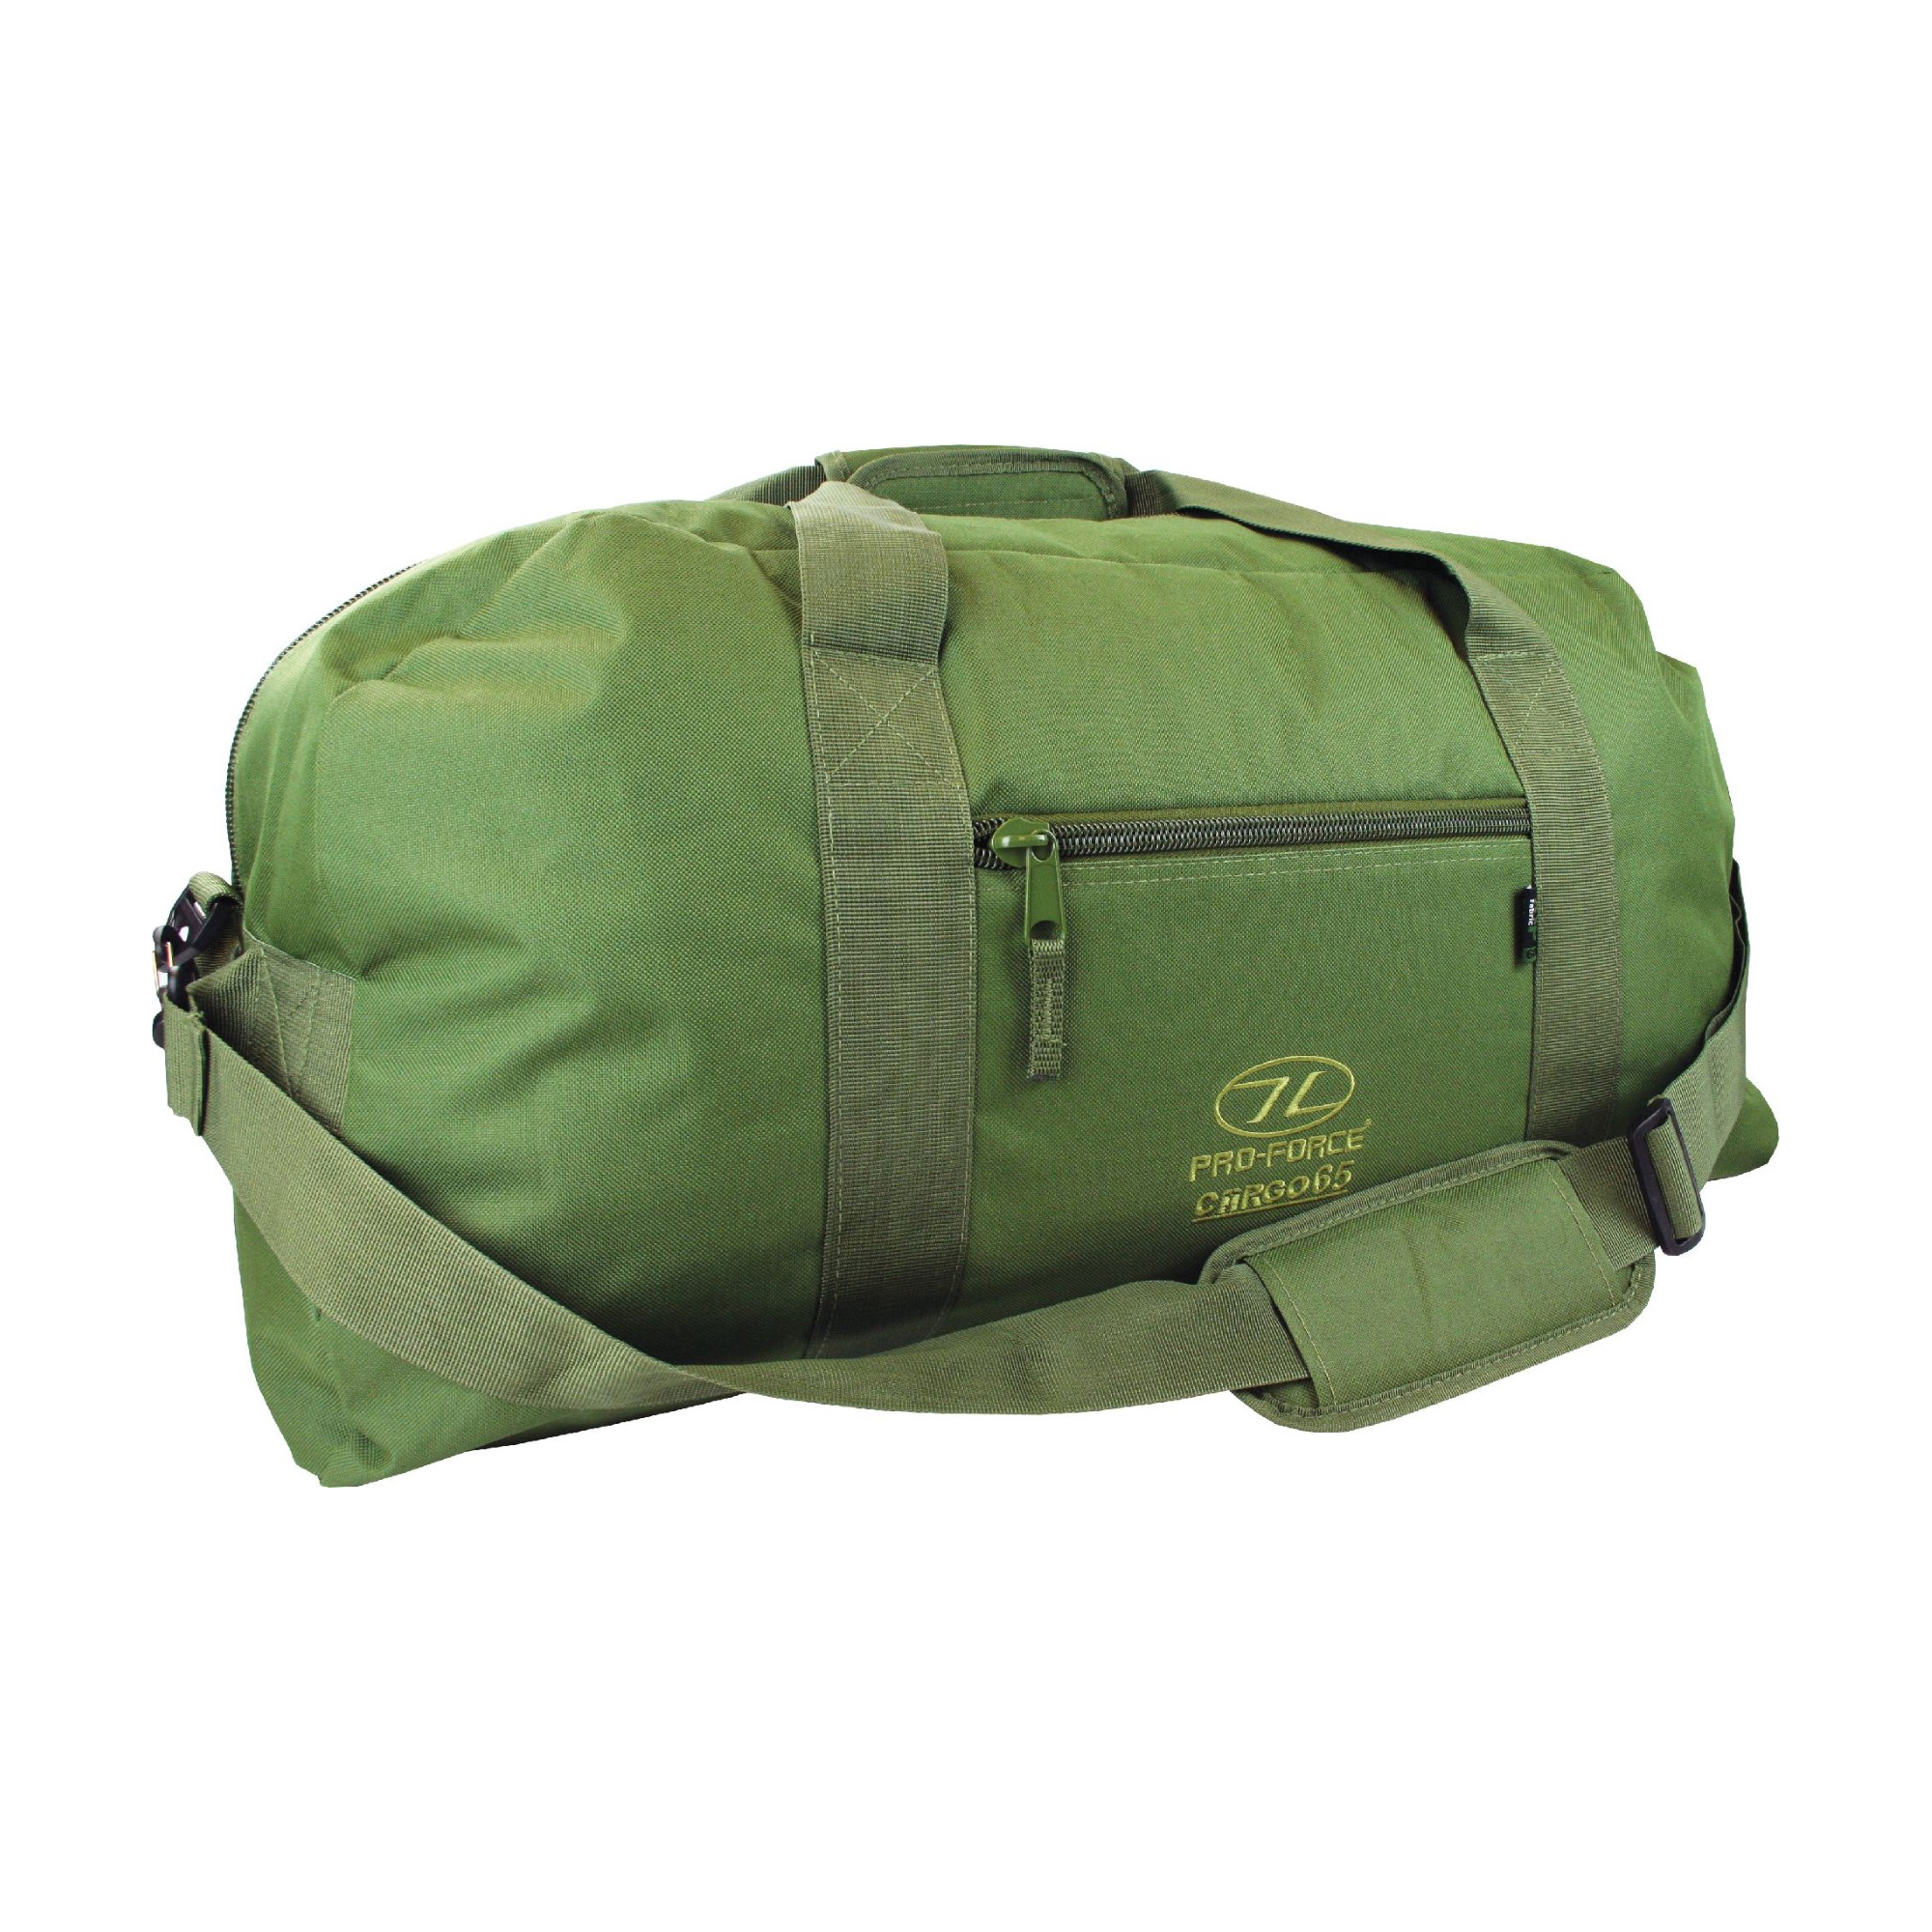 Cargo bag with shoulder strap – Highlander Media Centre